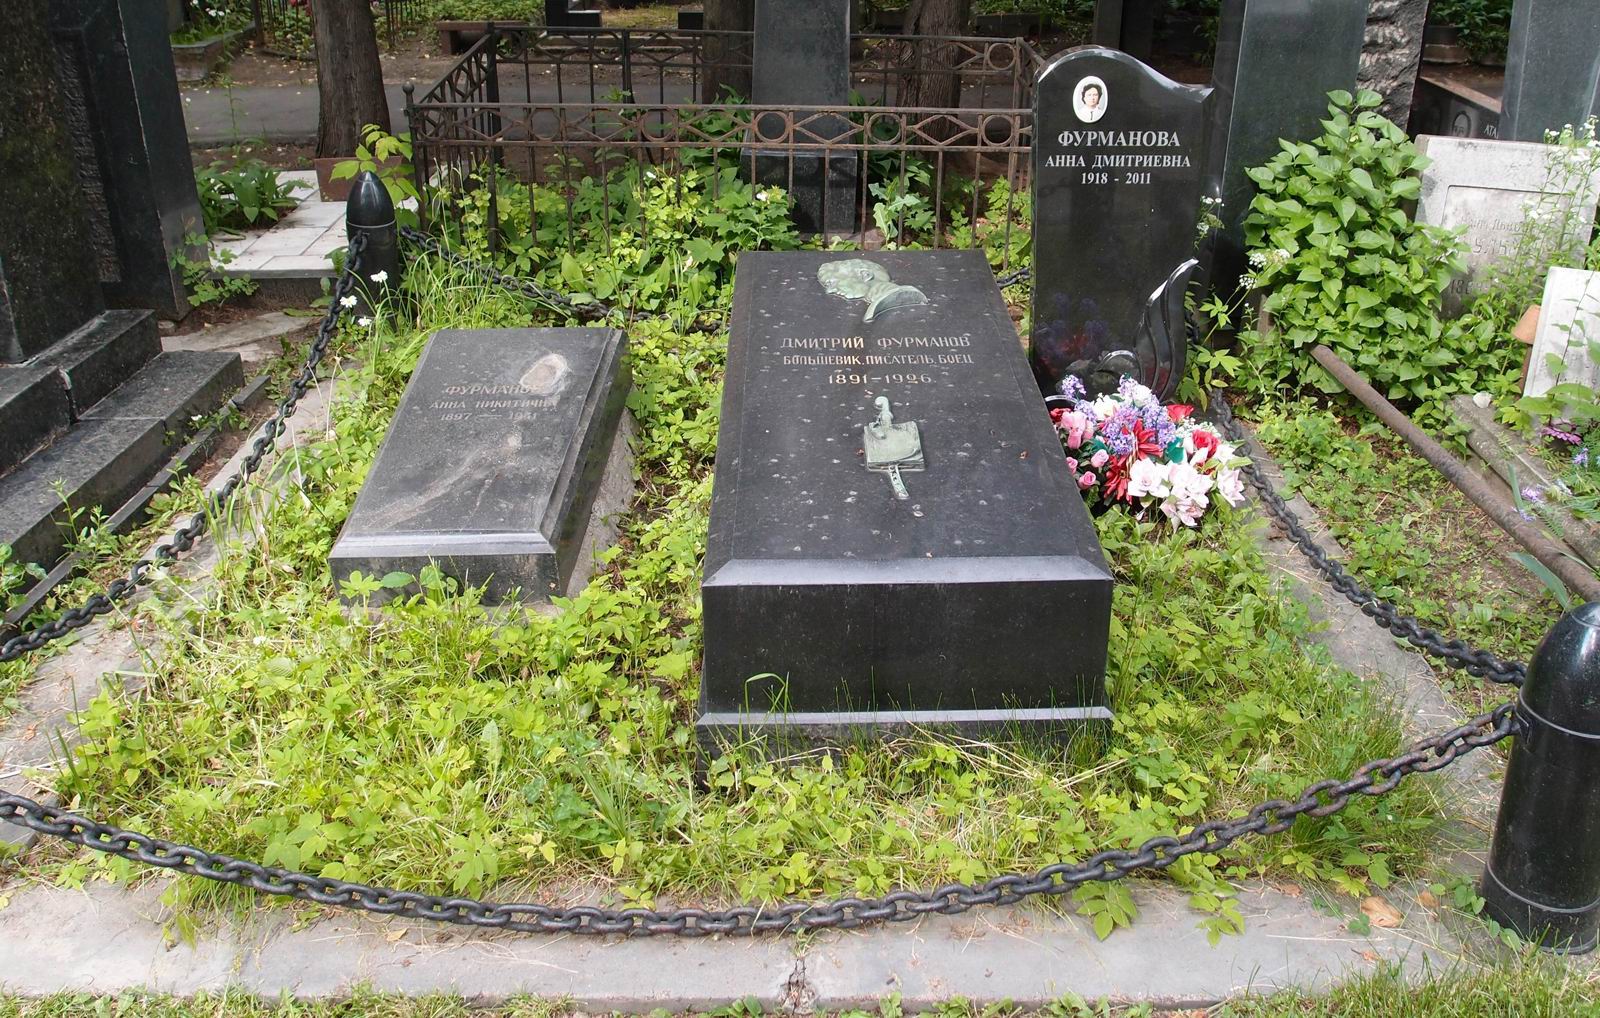 Памятник на могиле Фурманова Д.А. (1891-1926), ск. С.Мограчев, на Новодевичьем кладбище (1-44-38). Нажмите левую кнопку мыши, чтобы увидеть фрагмент памятника крупно.